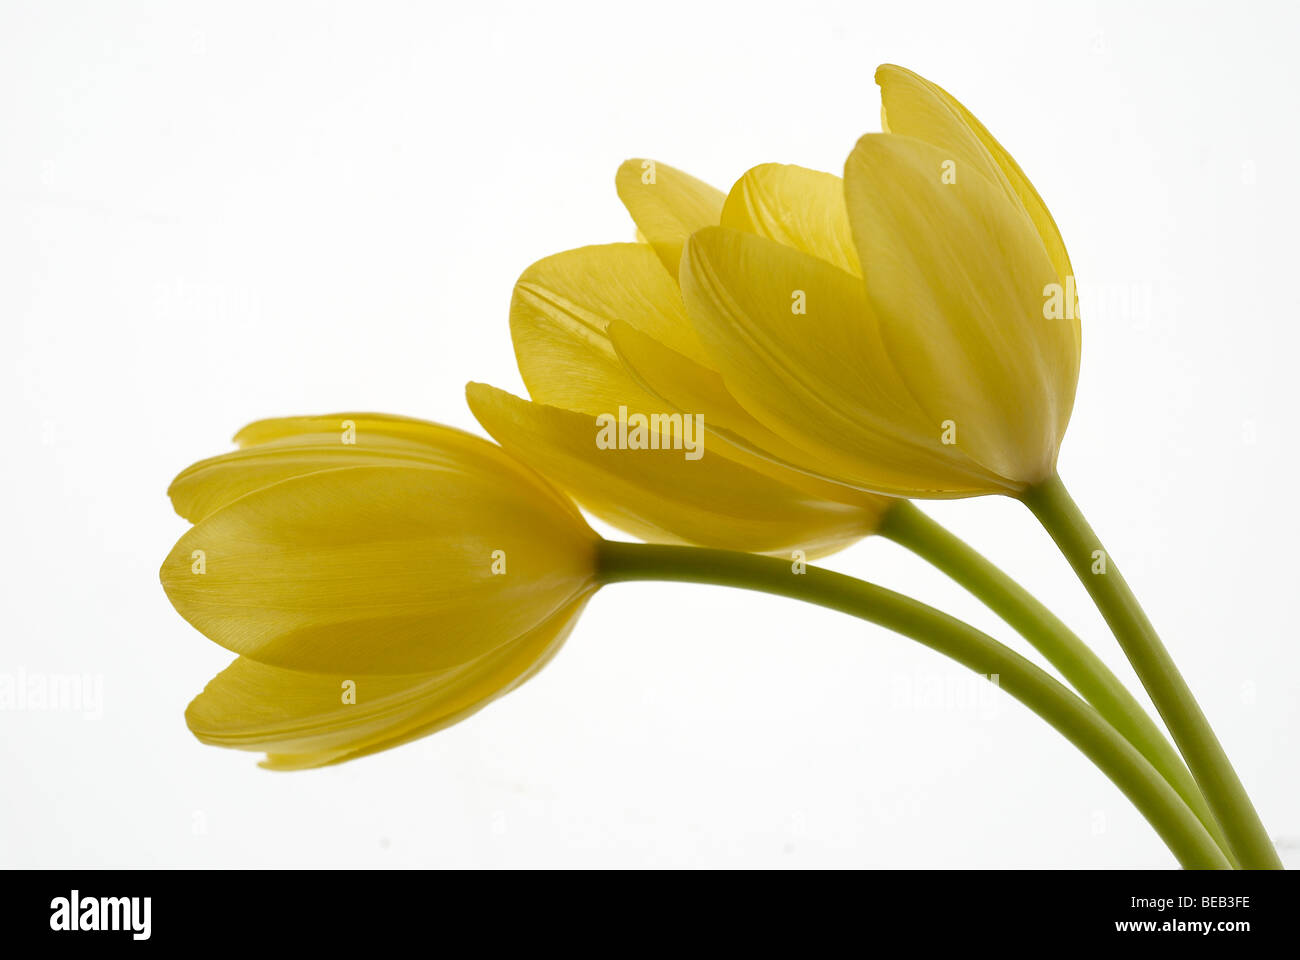 Tulpe, gelbe Tulpe, weißer Hintergrund, Blumen, Blume, 3 Tulpen, Stiele, Nahaufnahme, Nahaufnahme, Makro, Profil, Sommer, gelb Stockfoto